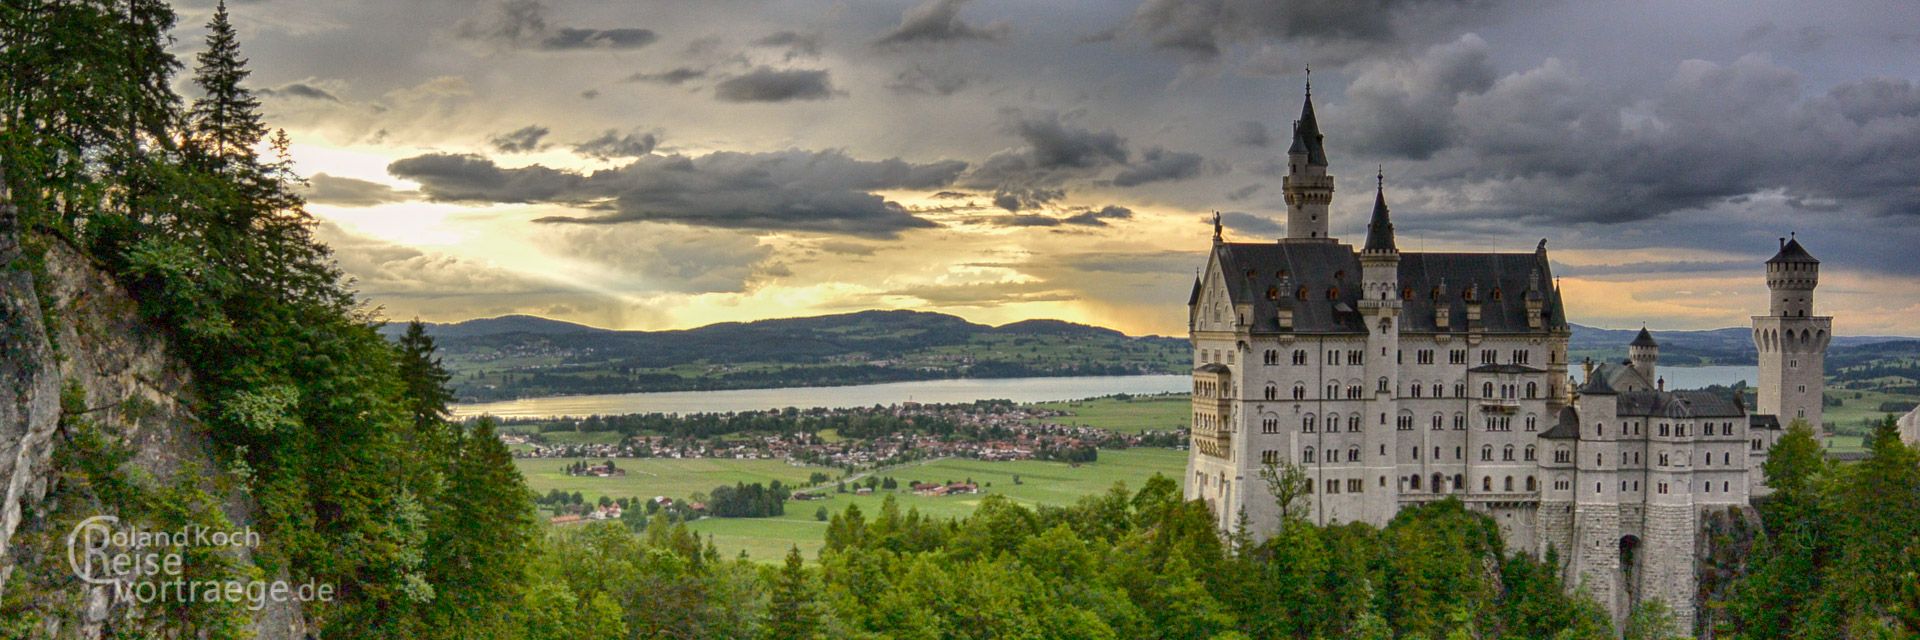 Panoramabilder Abendstimmung am Schloss Neuschwanstein mit Forggensee